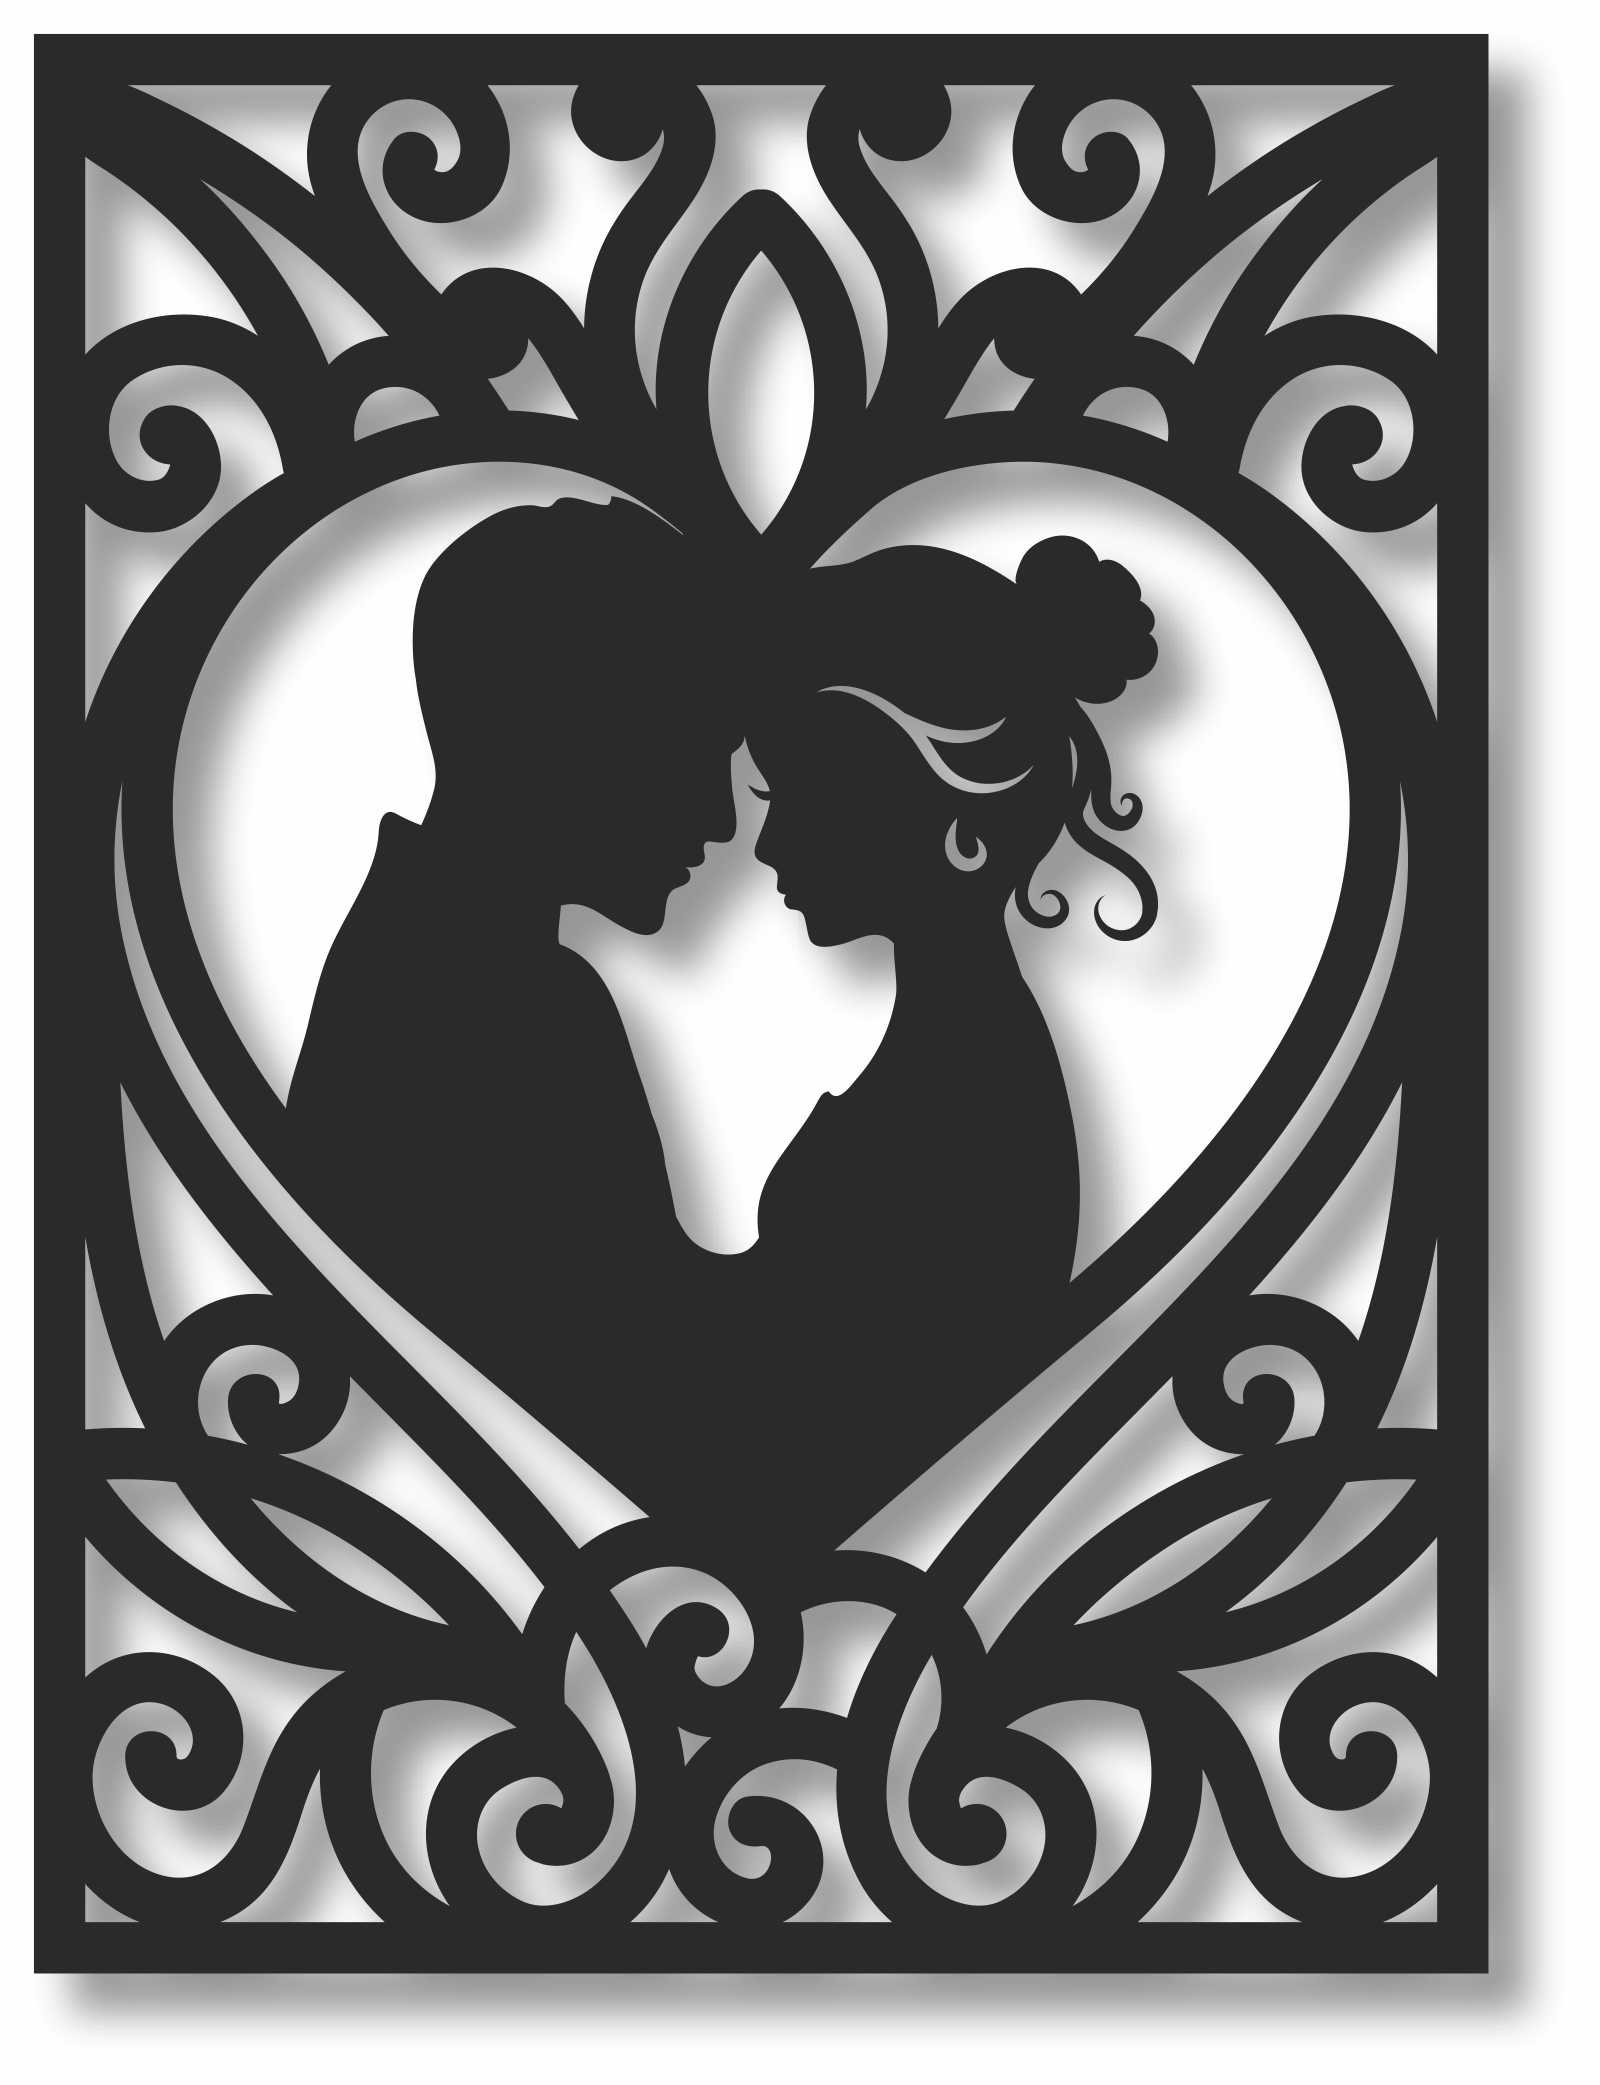 Bild Wandbild 3D Wandtattoo Acryl Mobile Paar Retro Liebe Love